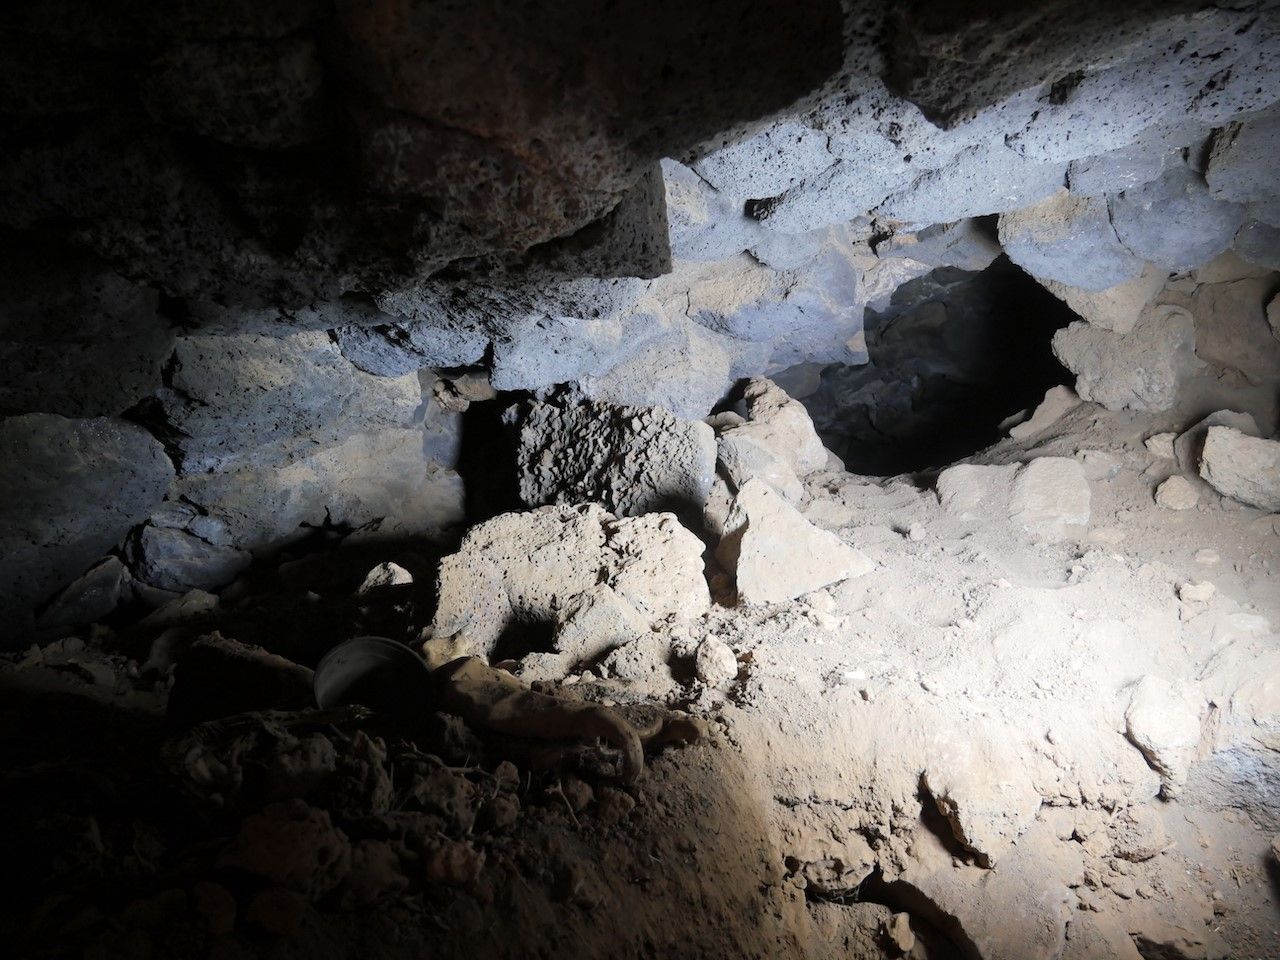 Presentación nuevos hallazgos en la Cueva del Majo en La Degollada